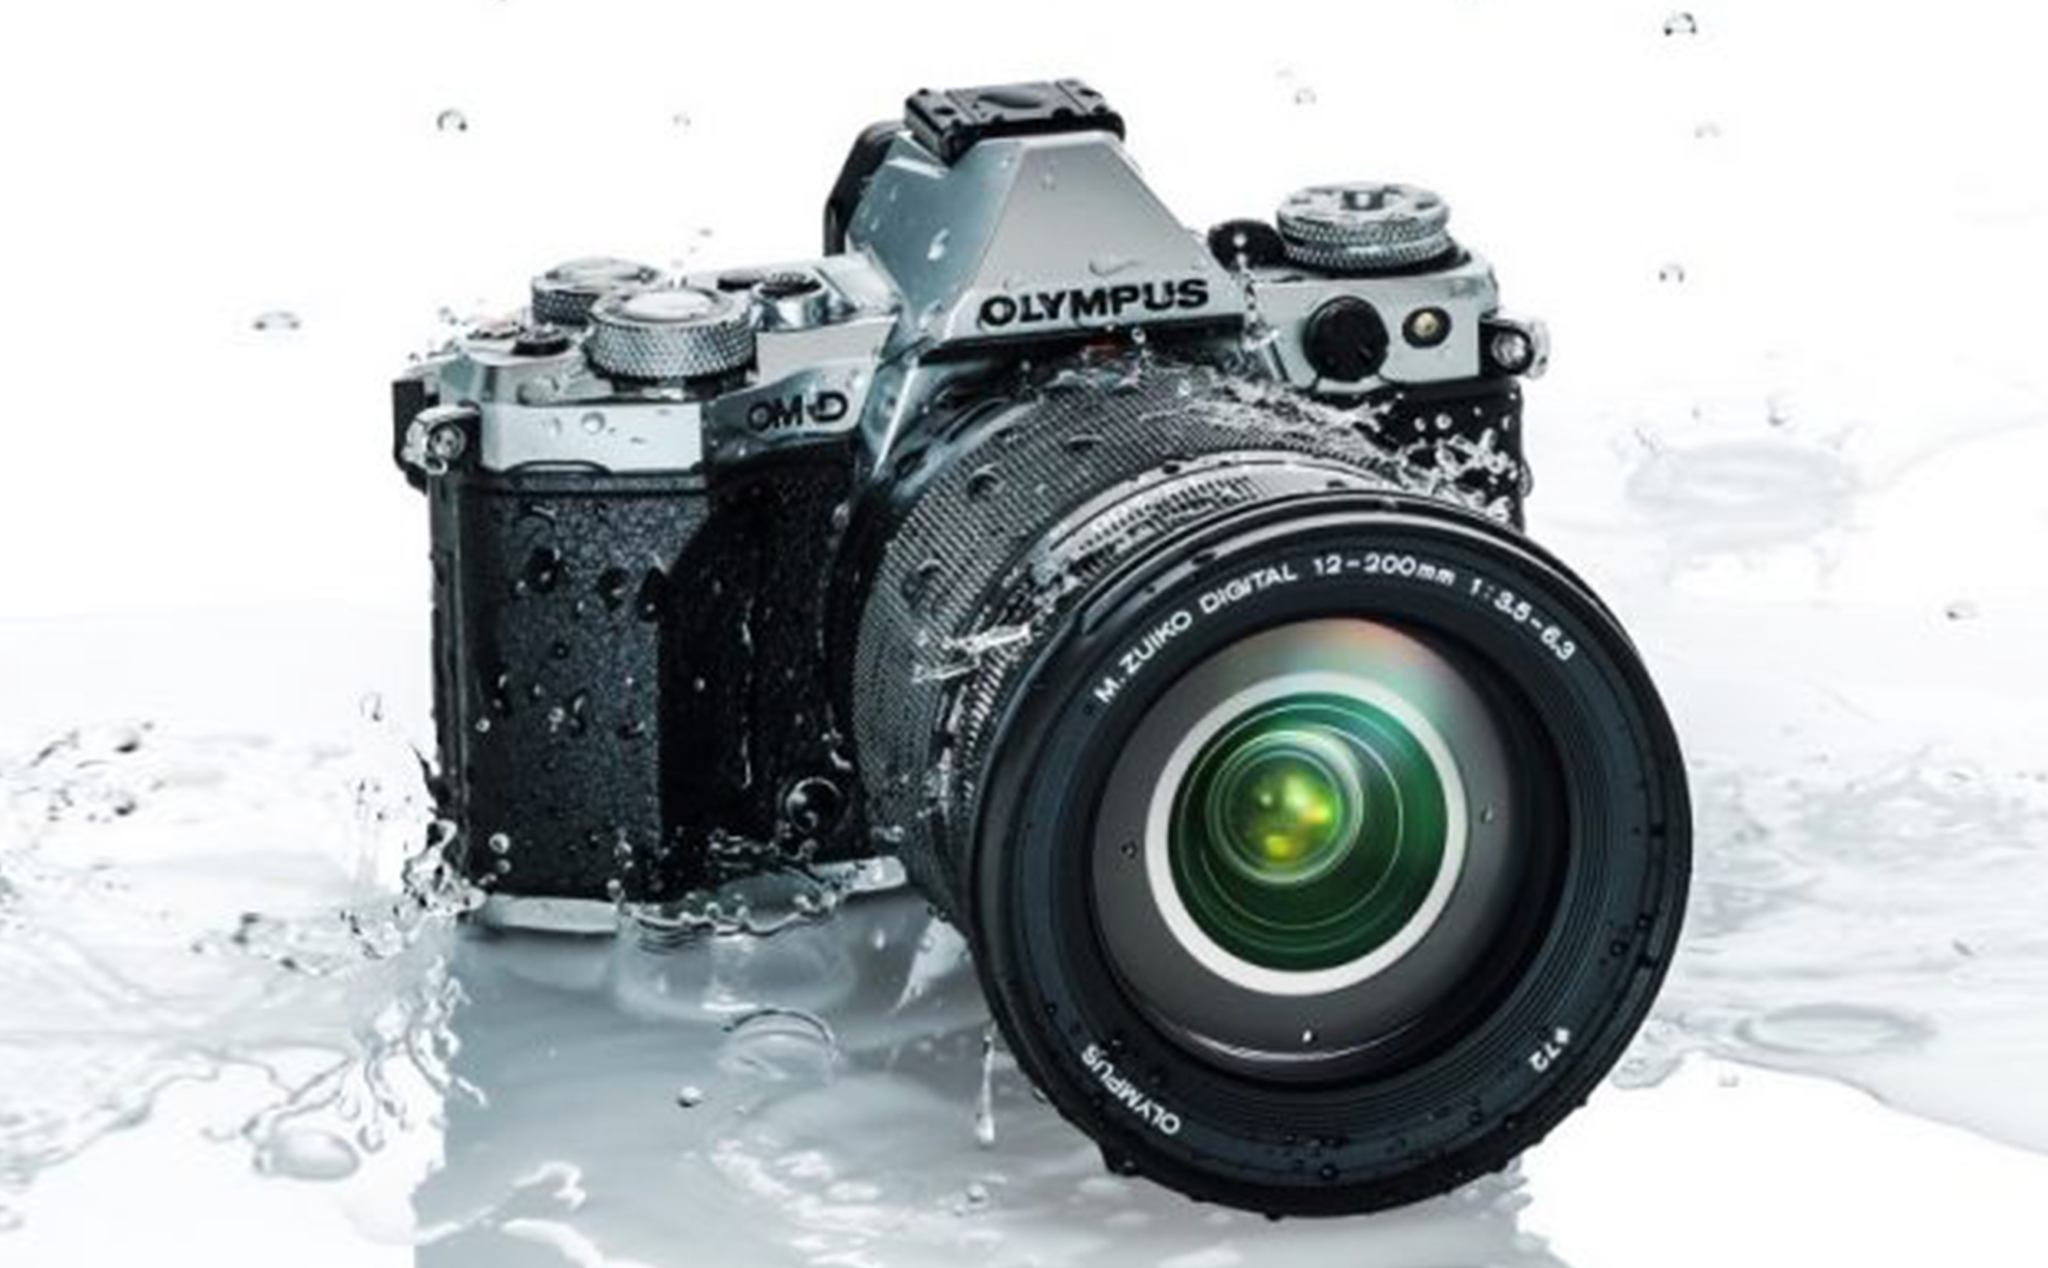 Olympus giới thiệu ống kính "All in One" M.Zuiko Digital ED 12-200mm f/3.5-6.3